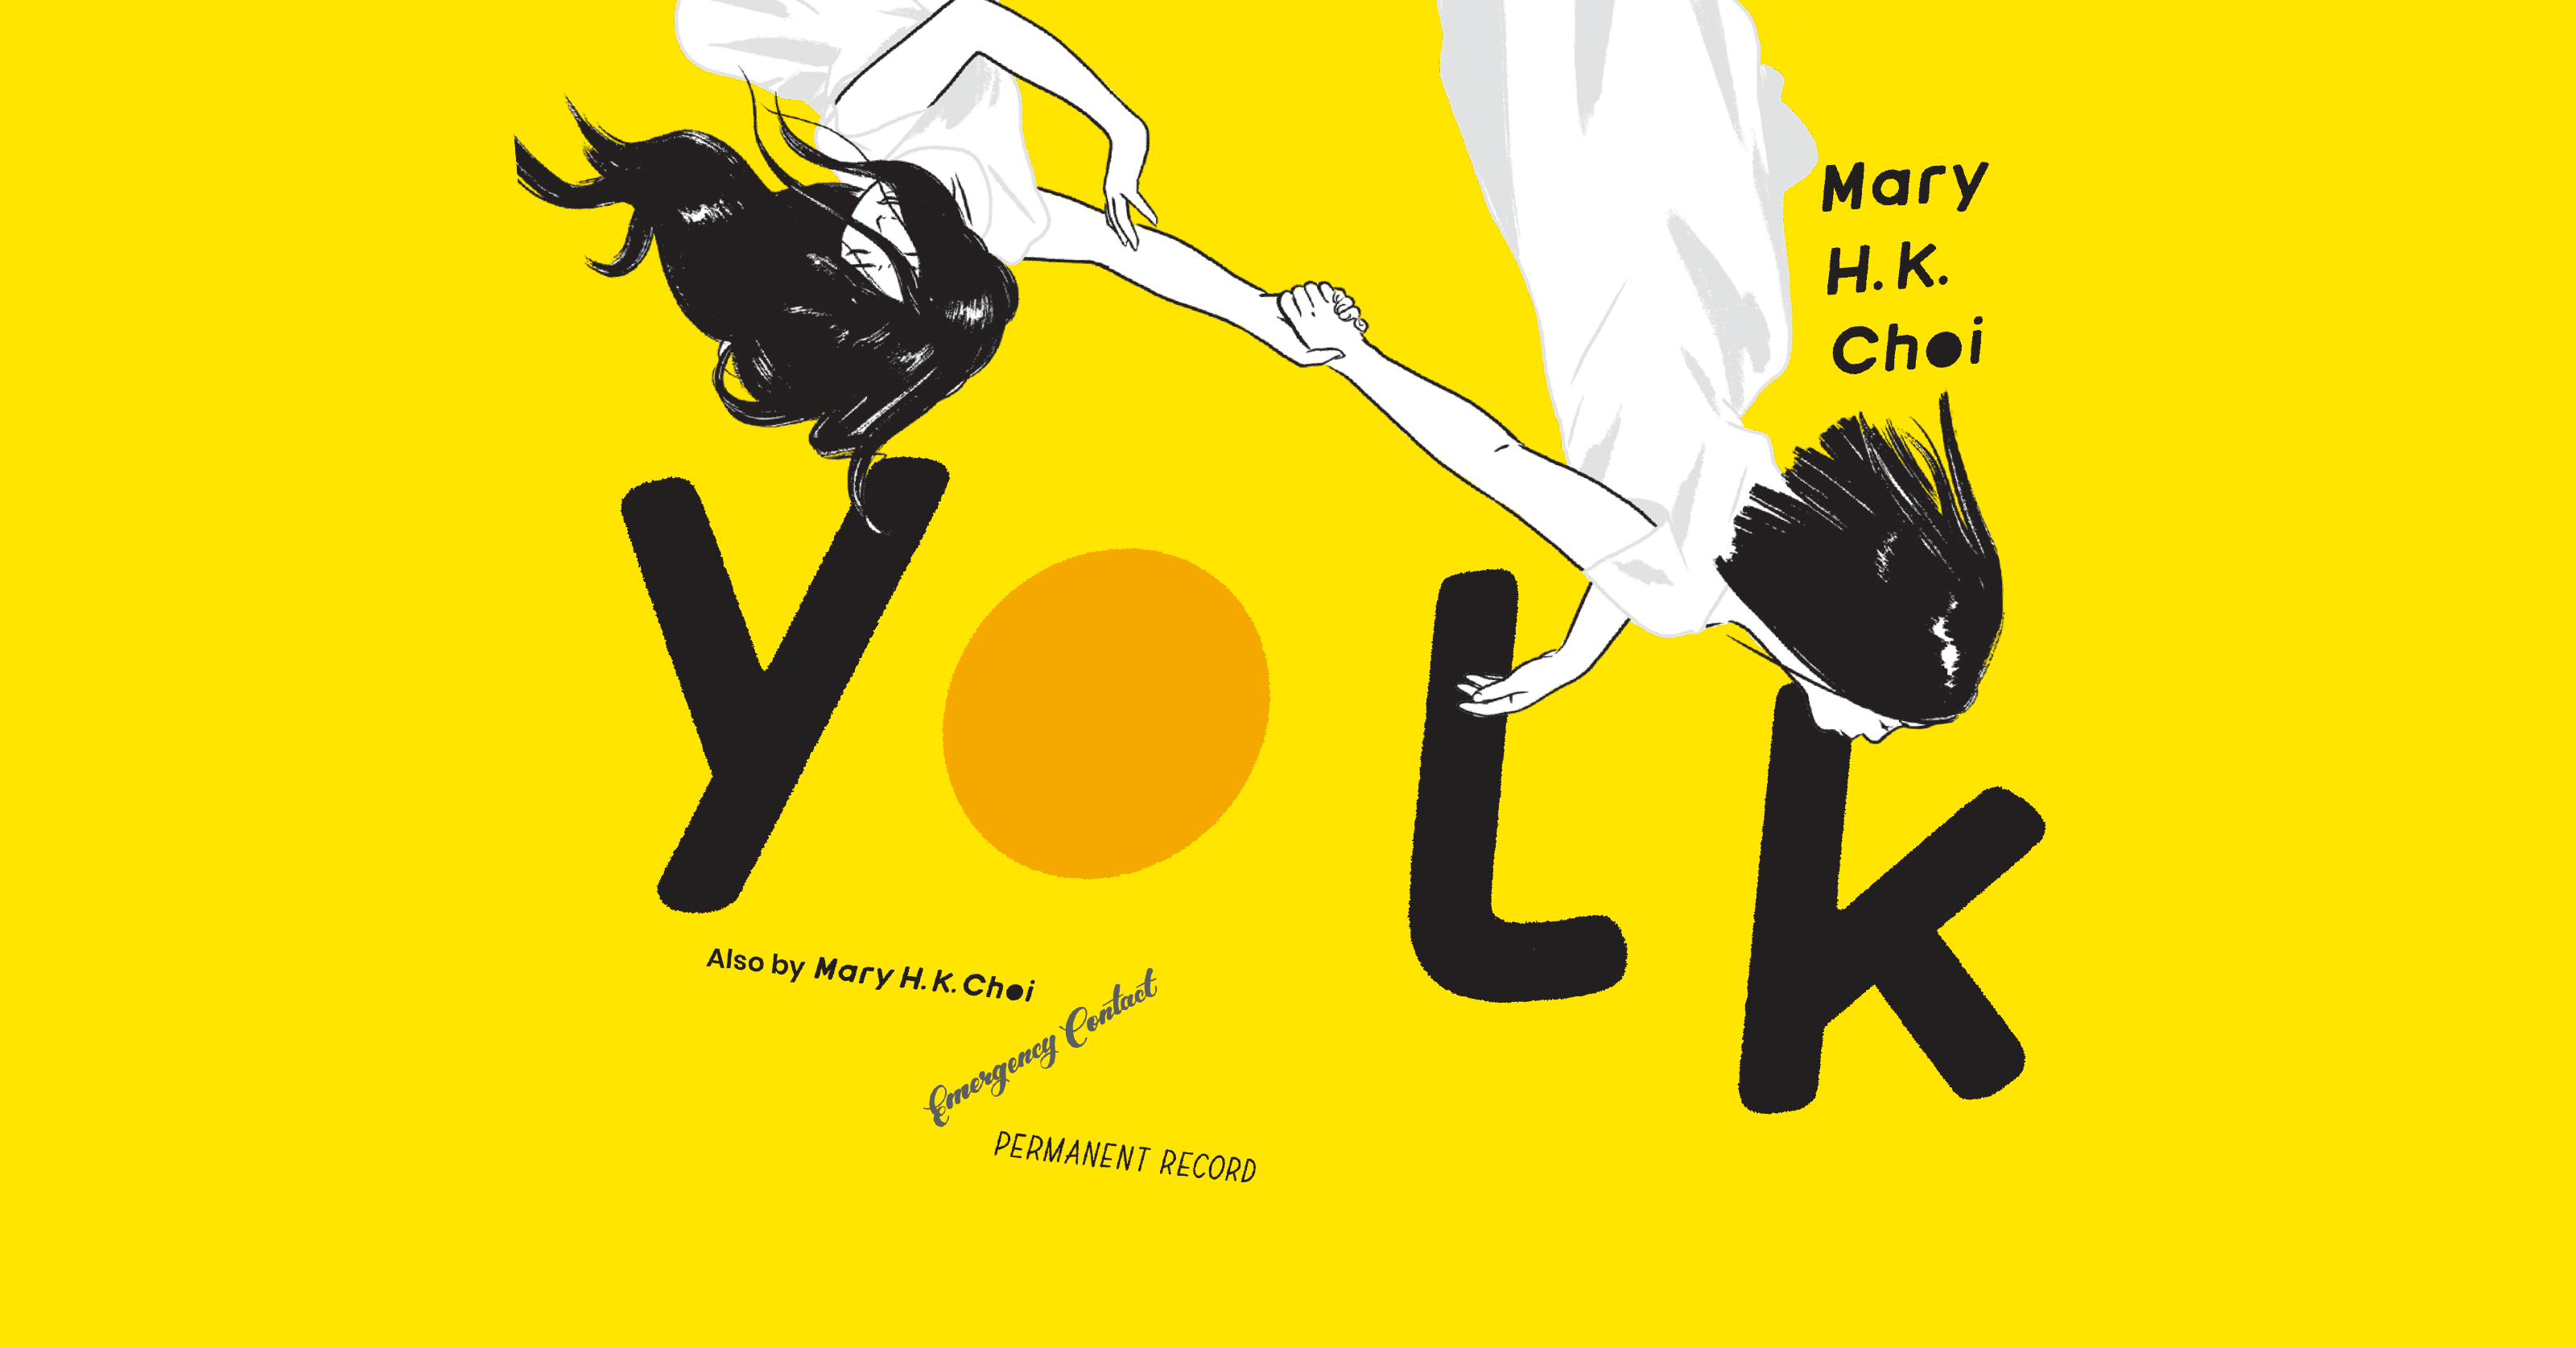 Yolk by Mary H. K. Choi